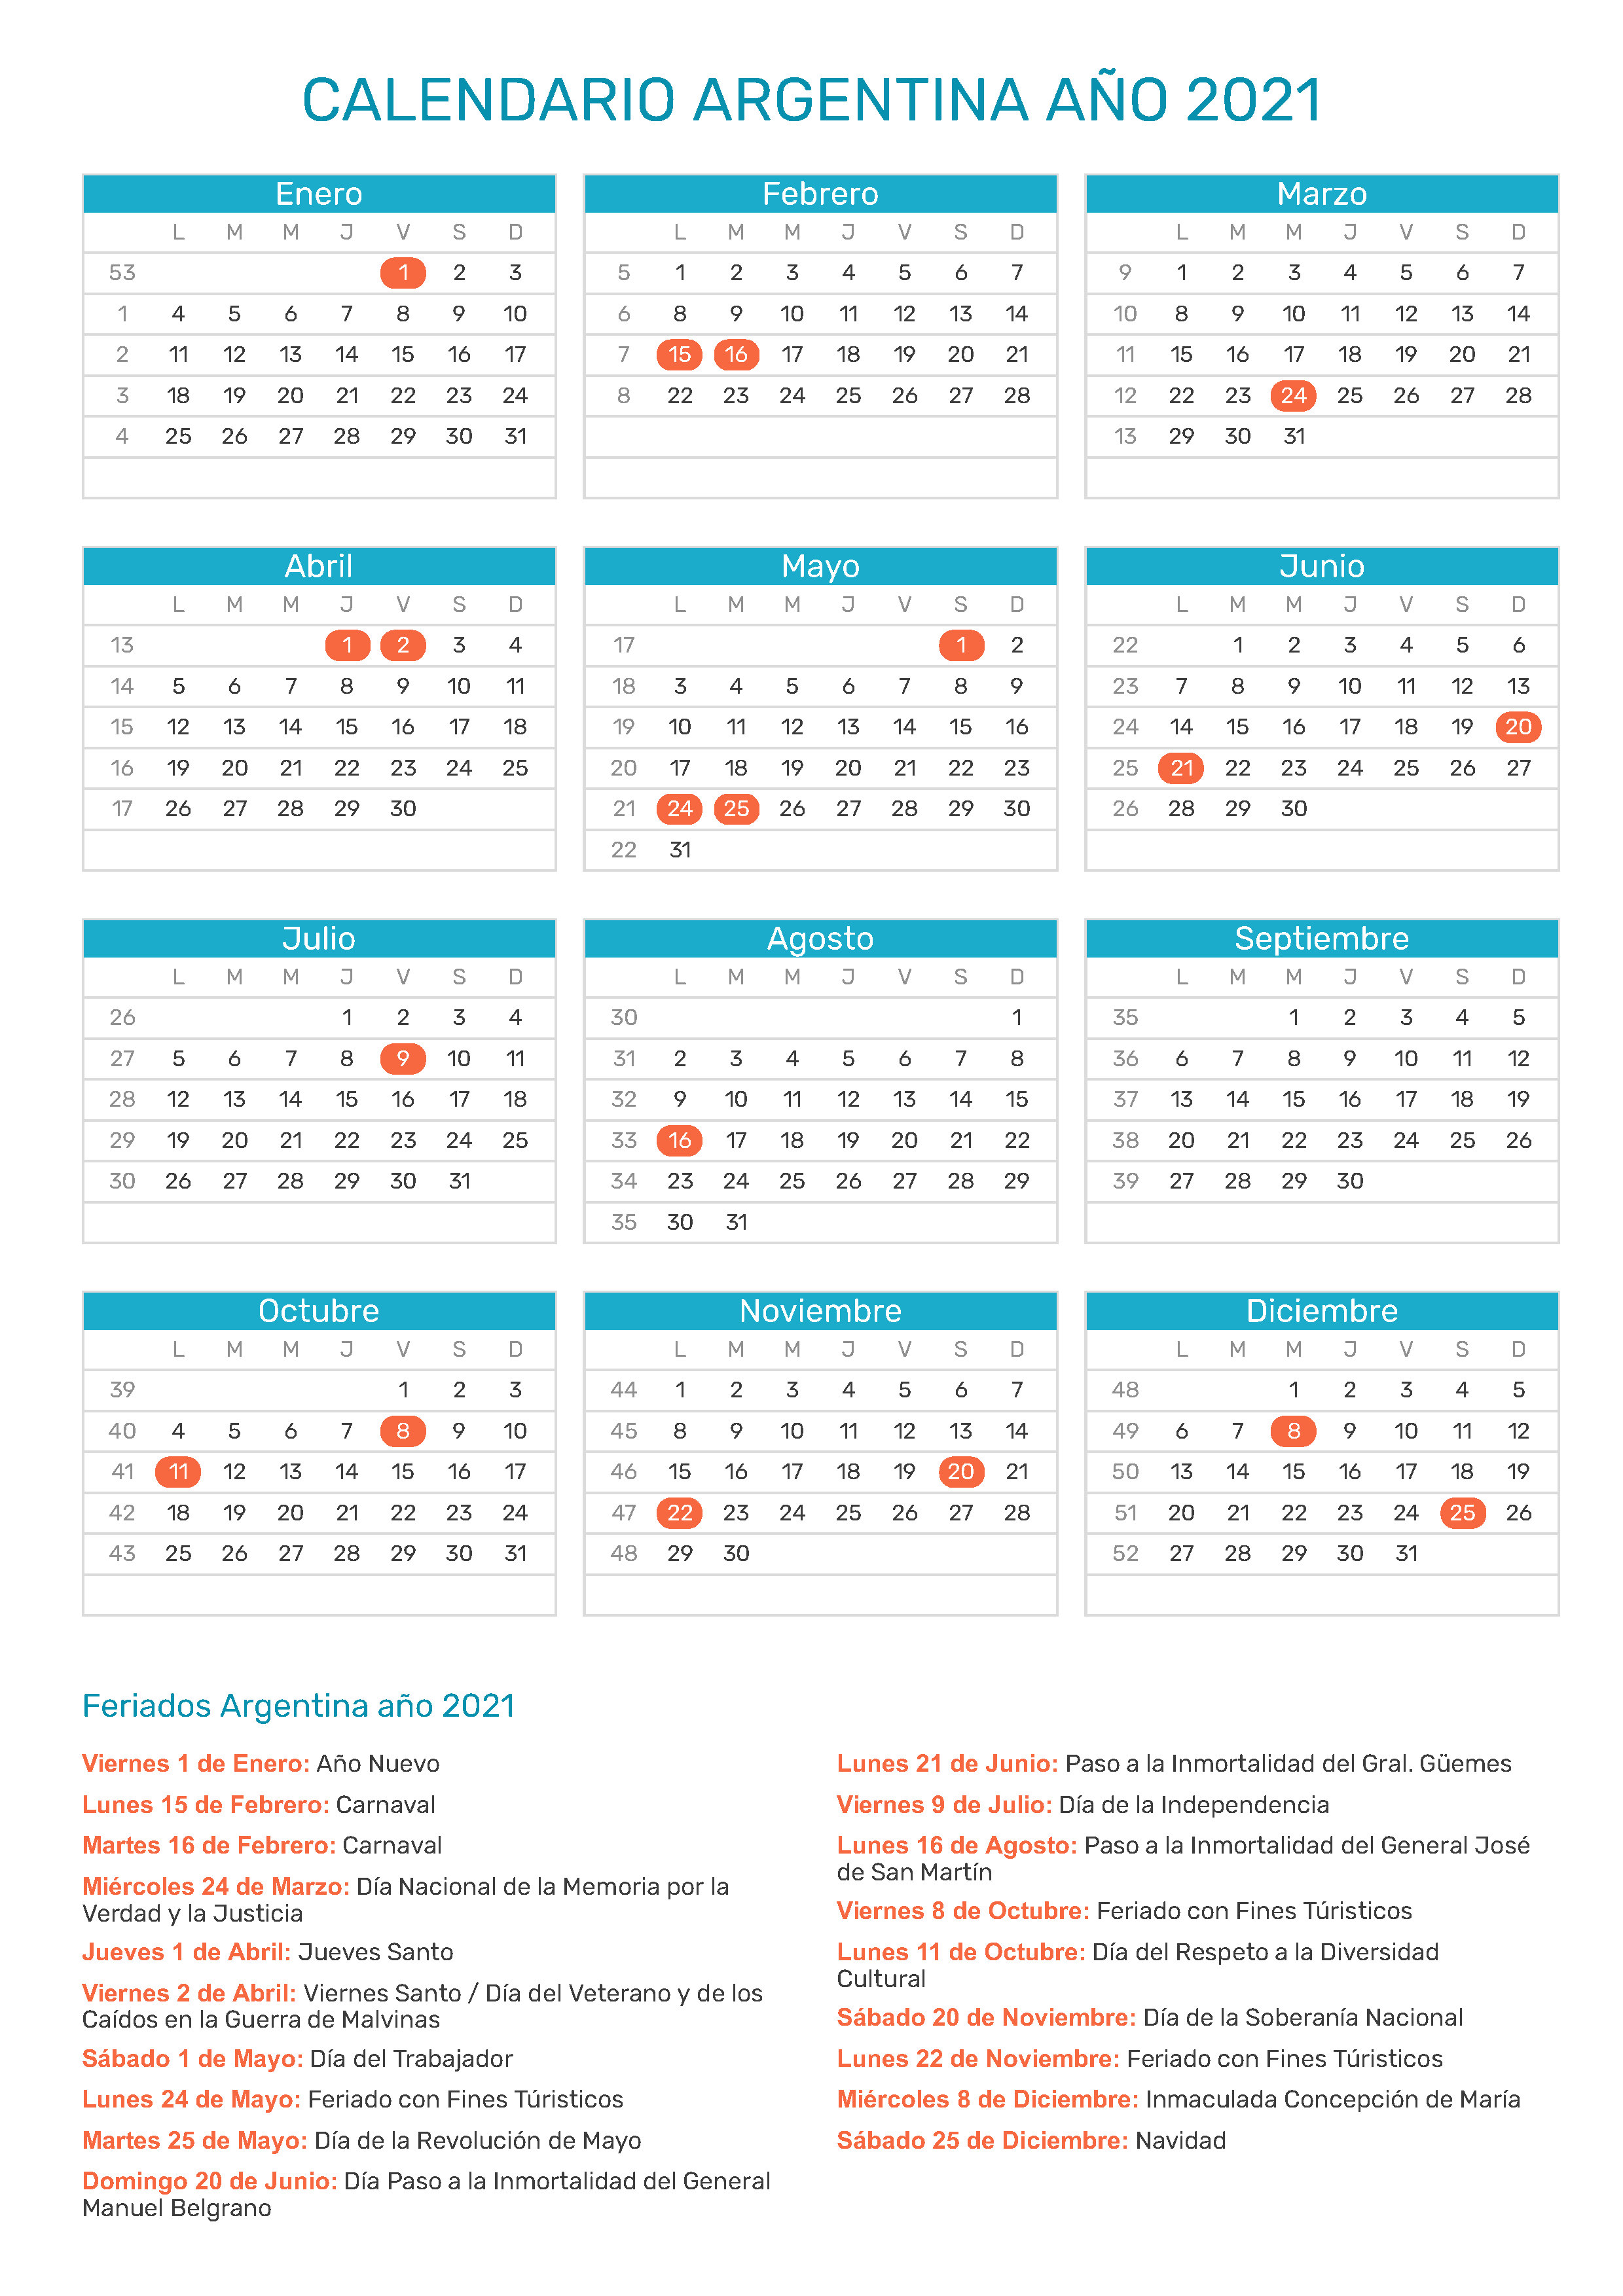 Calendario completo: 18 feriados en total para el 2021